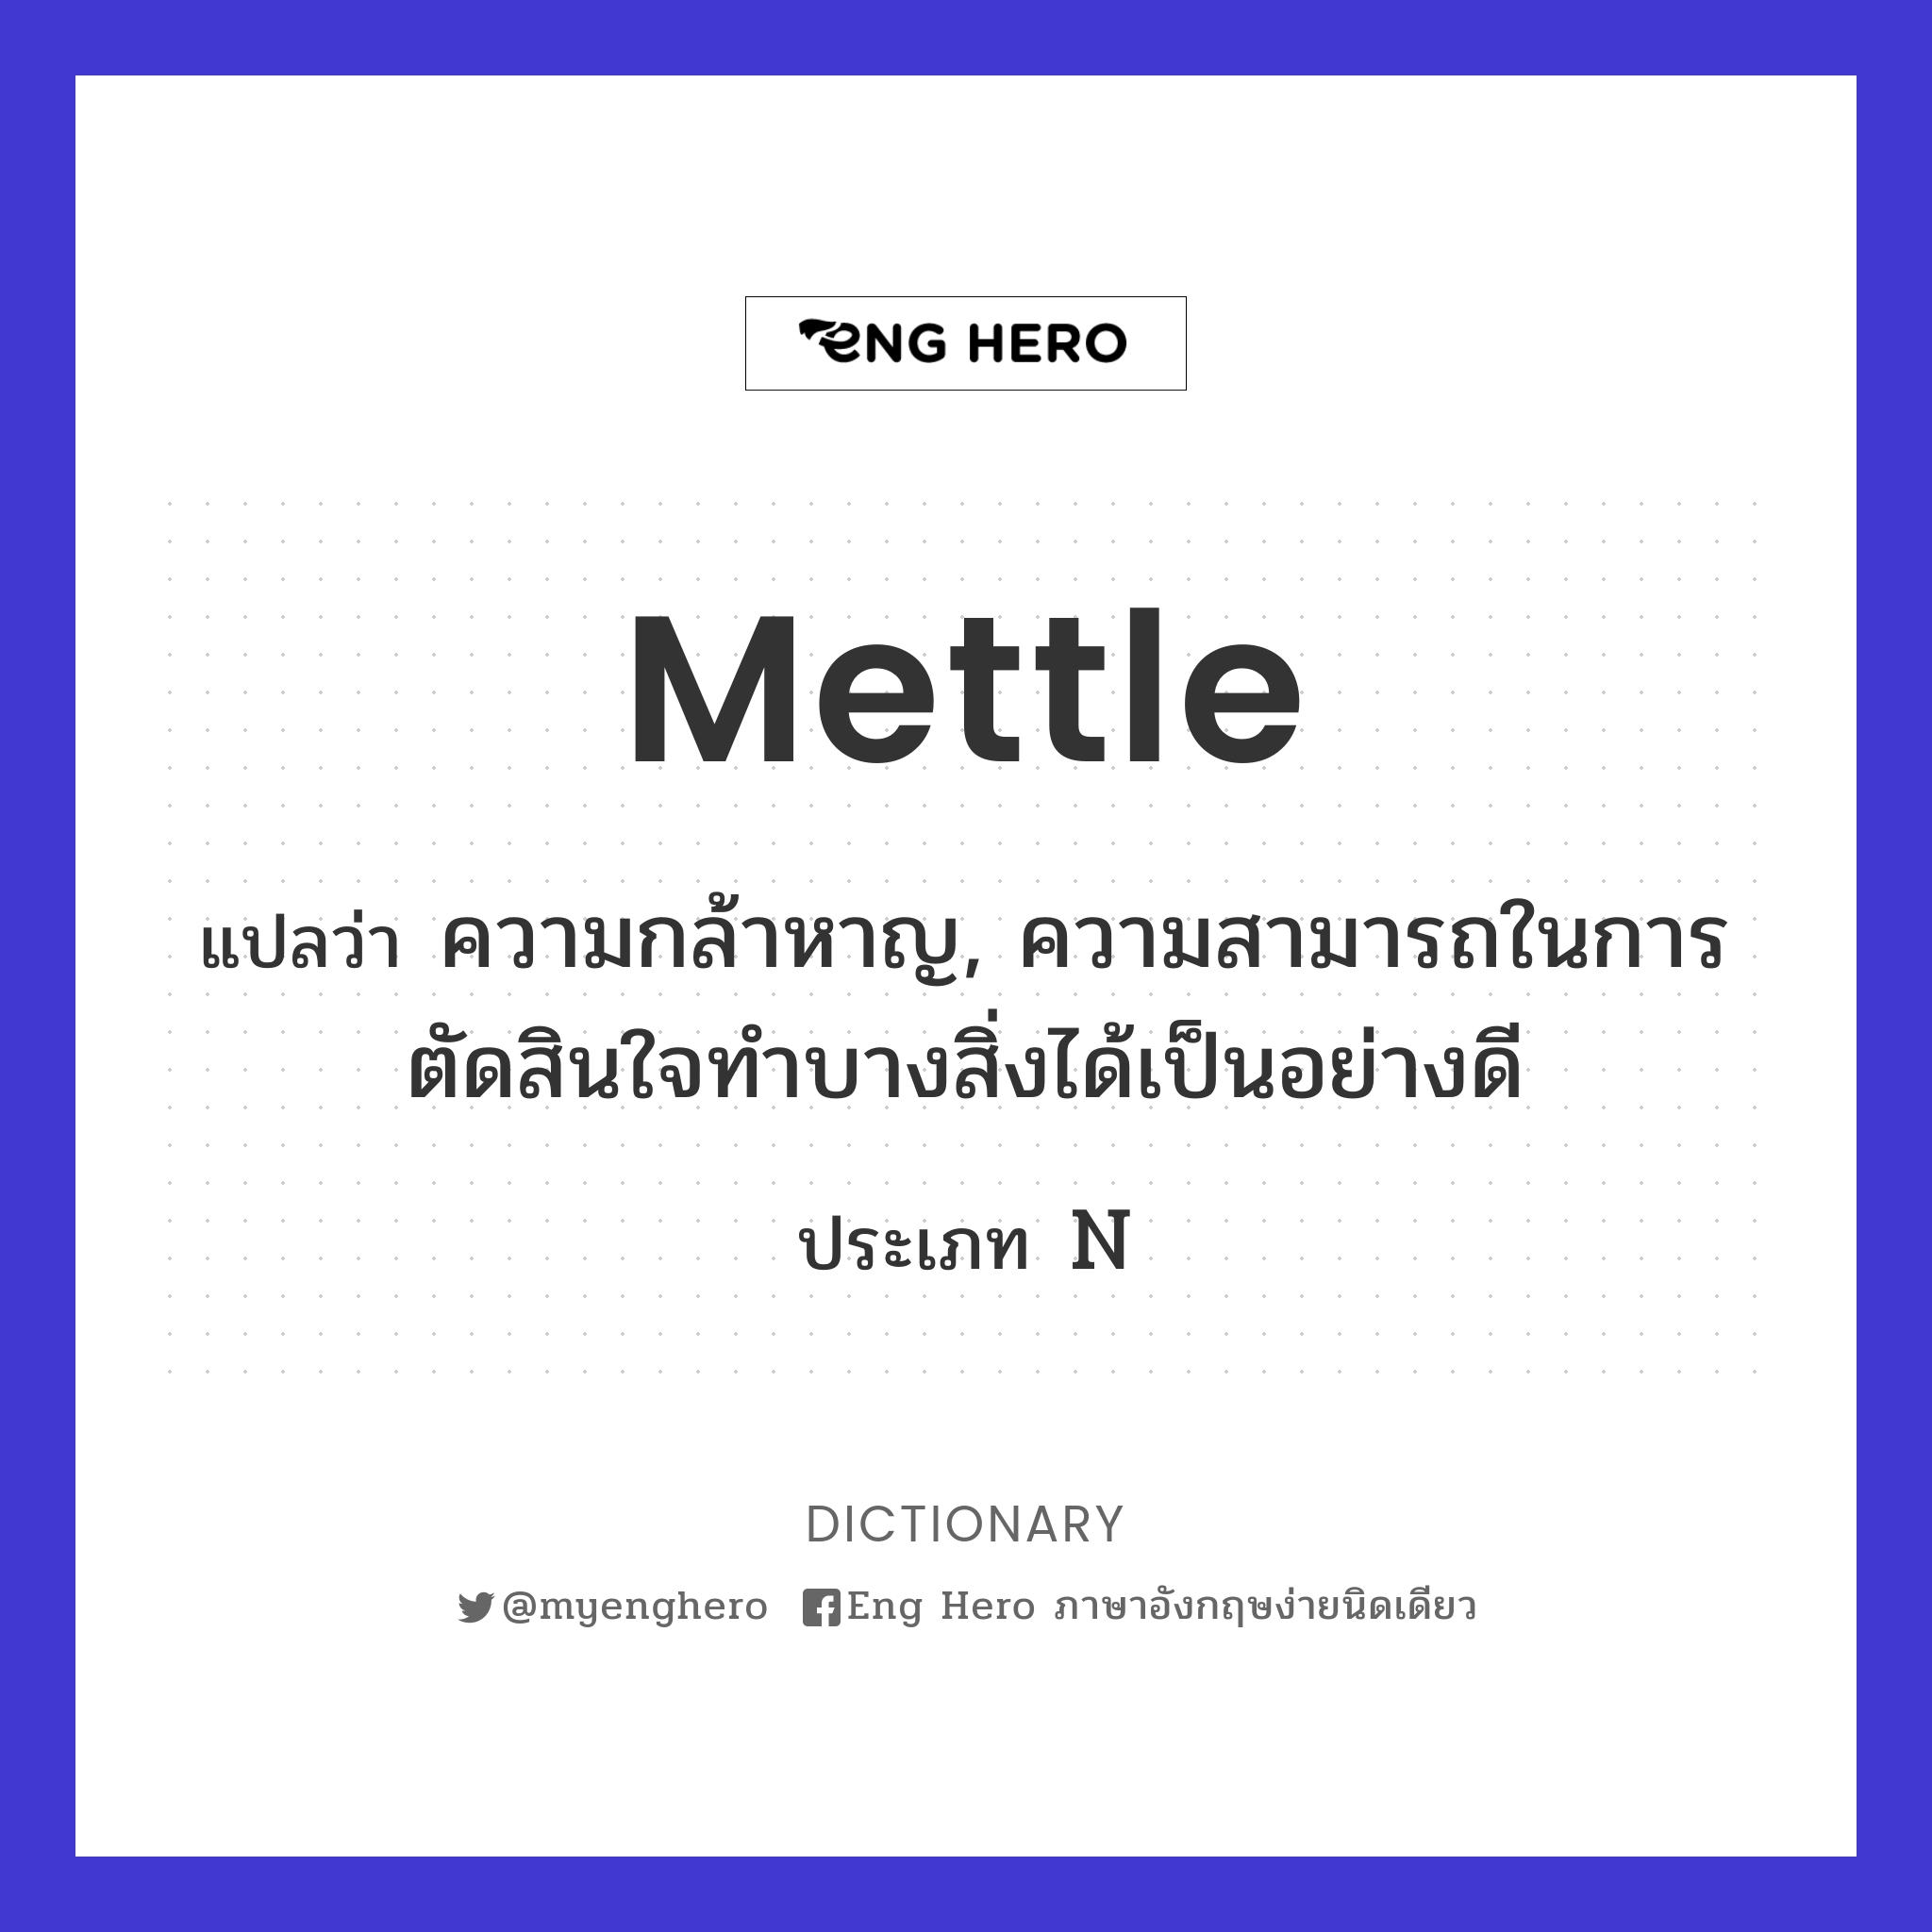 mettle